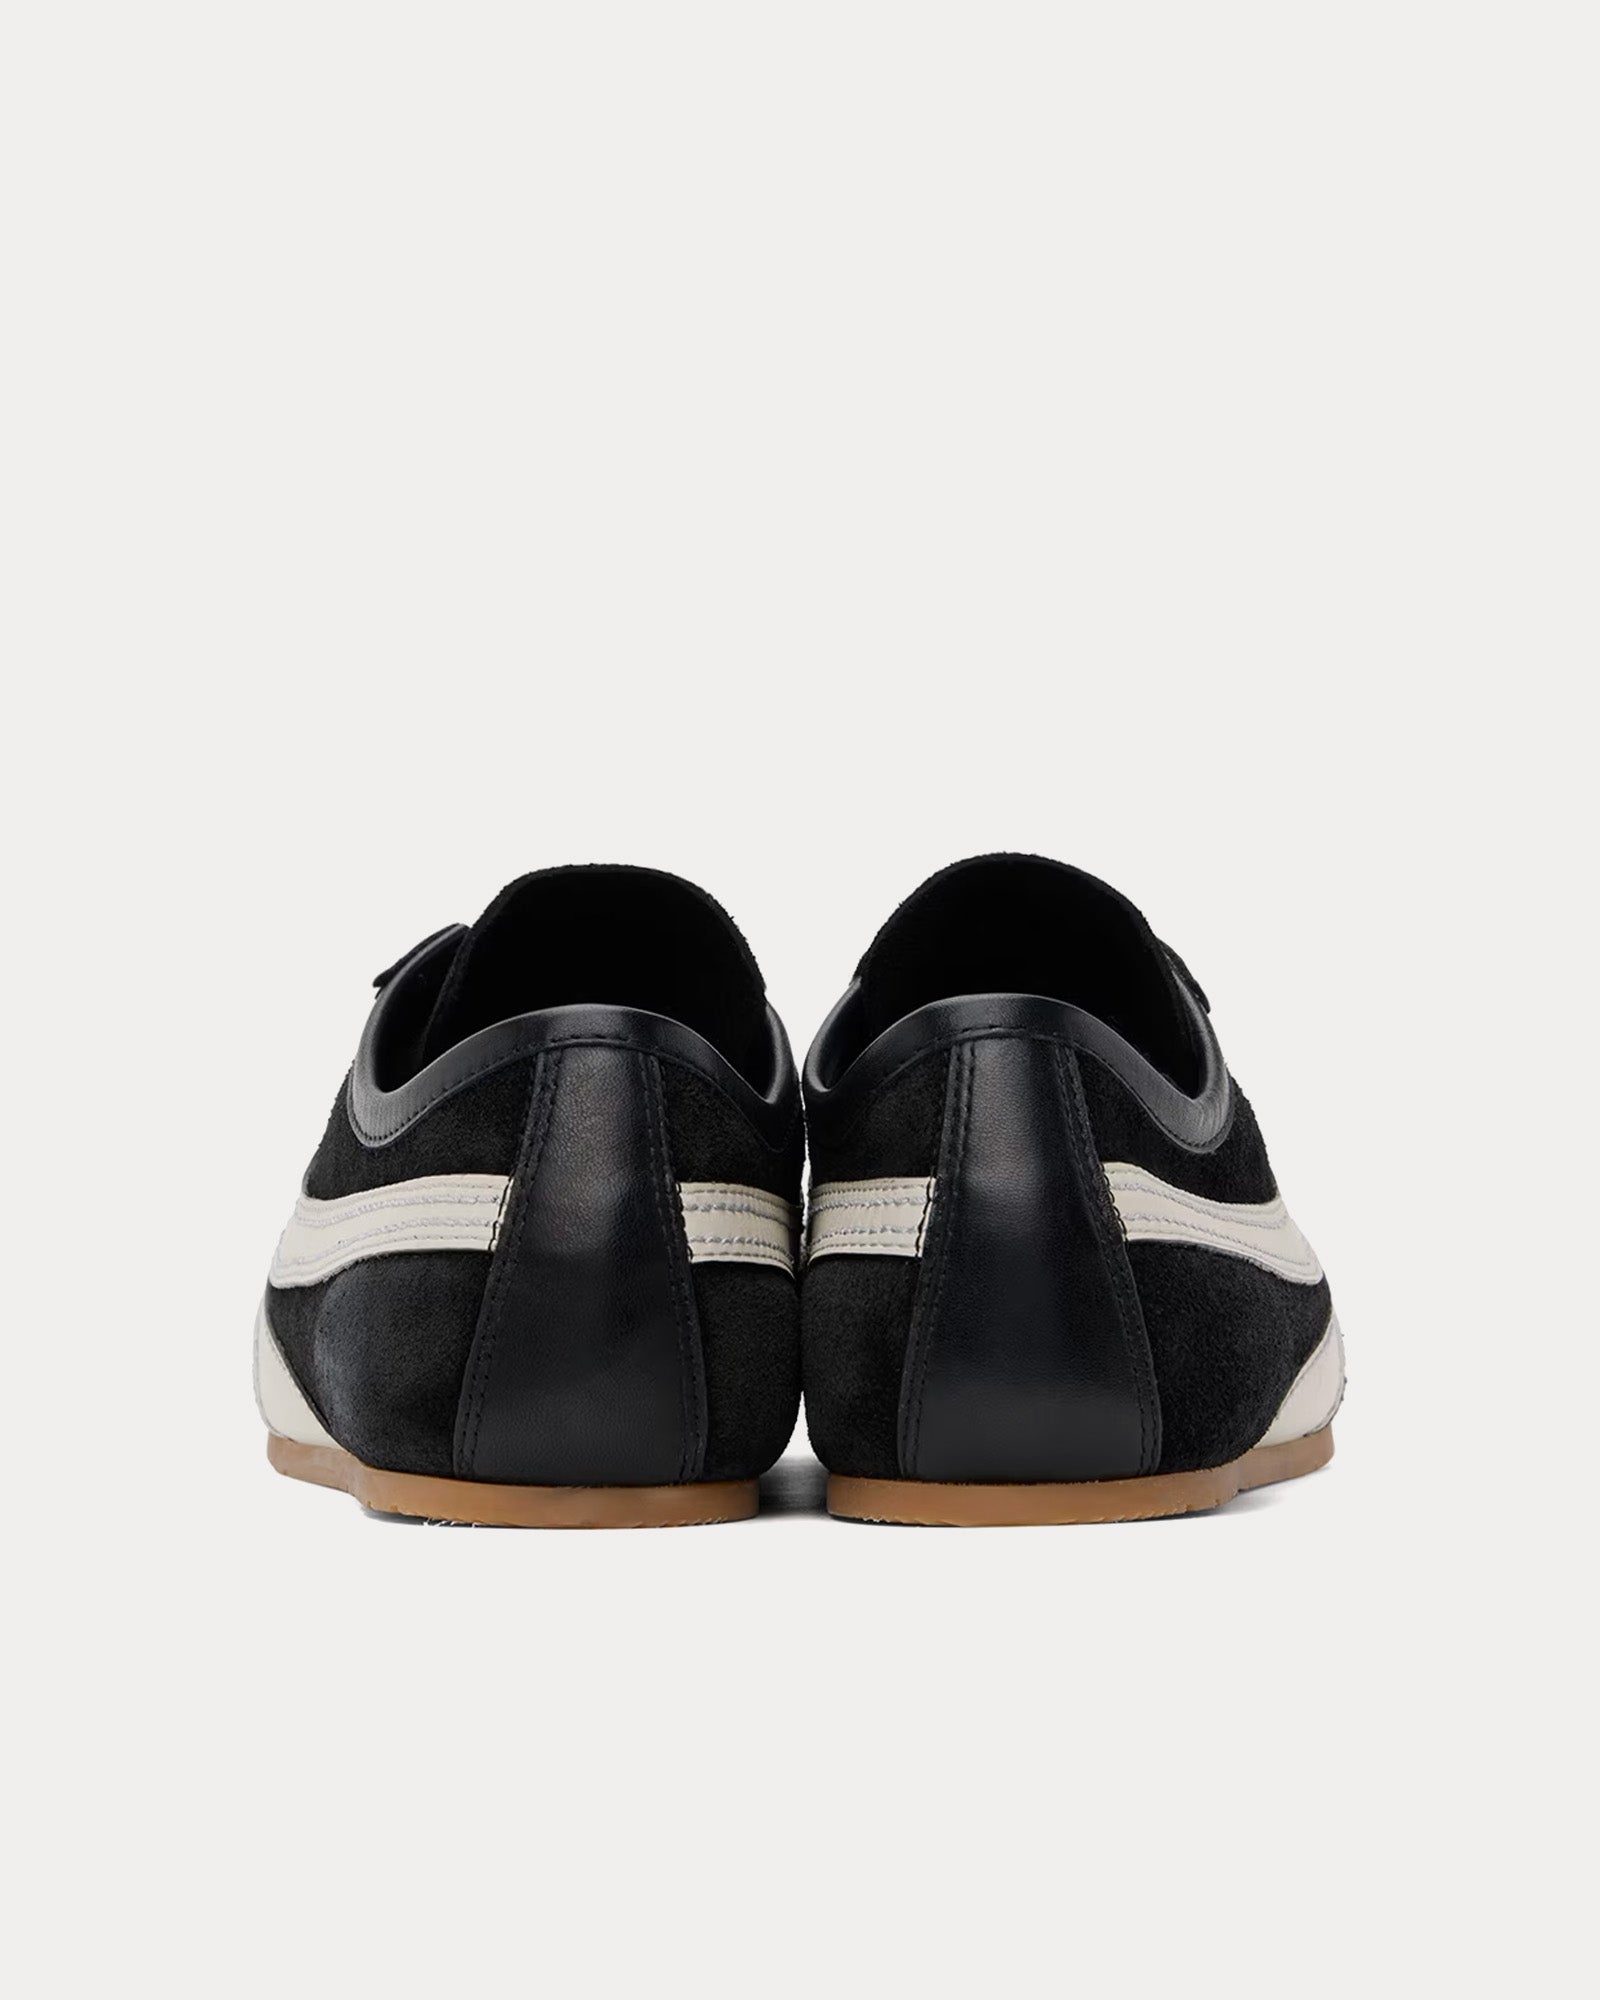 Dries Van Noten - 70's Suede Black Low Top Sneakers